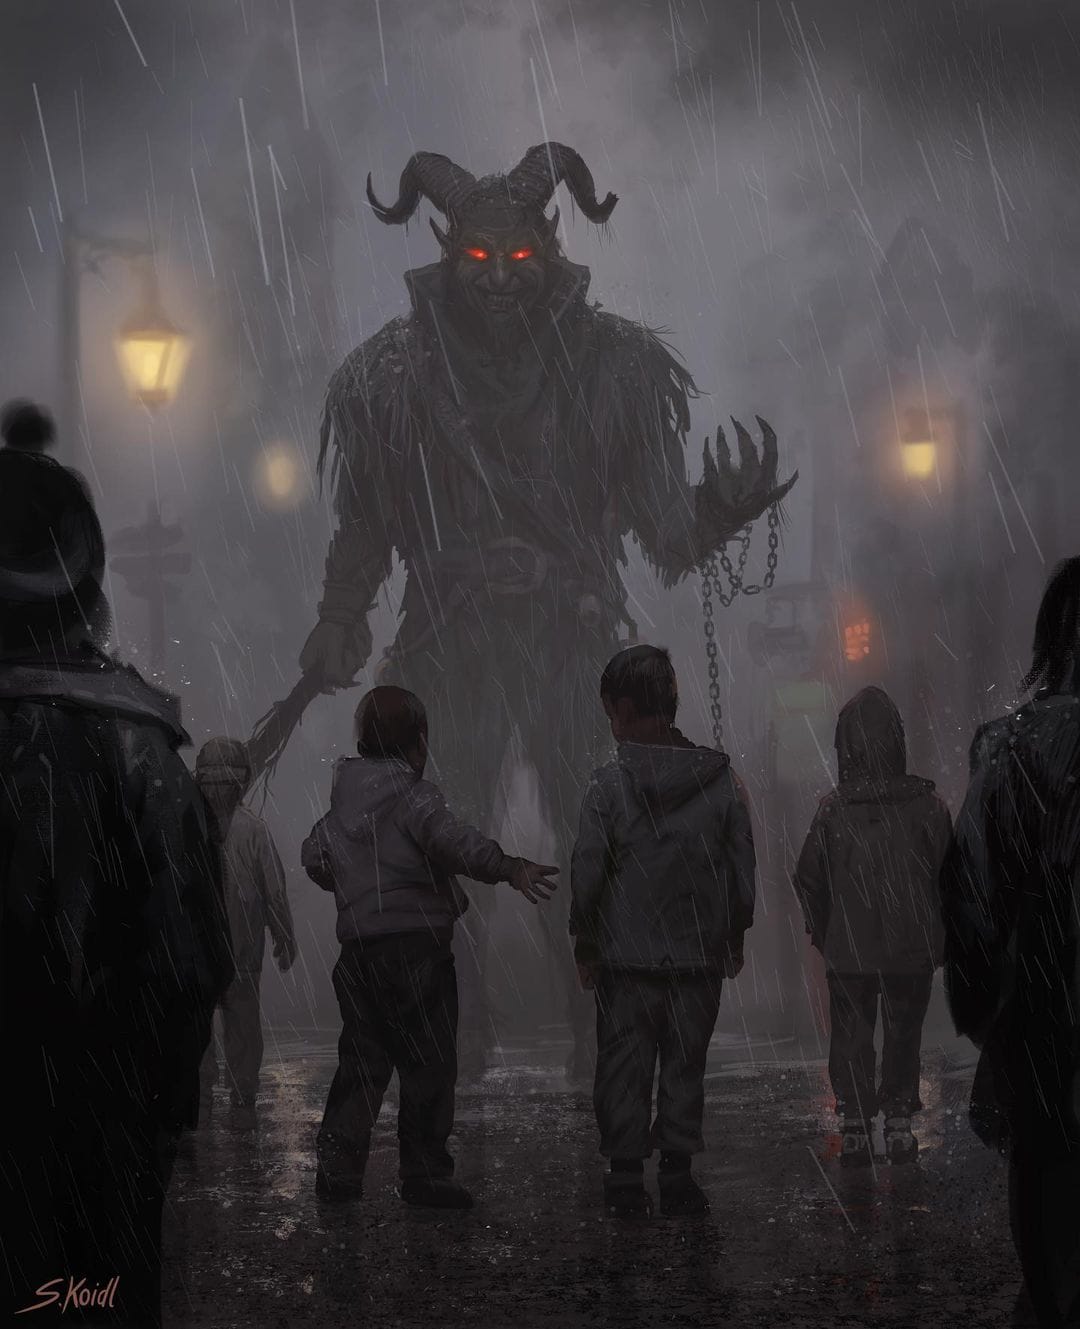 Illustration Horrifique représentant un monstre géant à cornes aux yeux rouges et aux mains pointues se tenant devant des enfants terrorisés